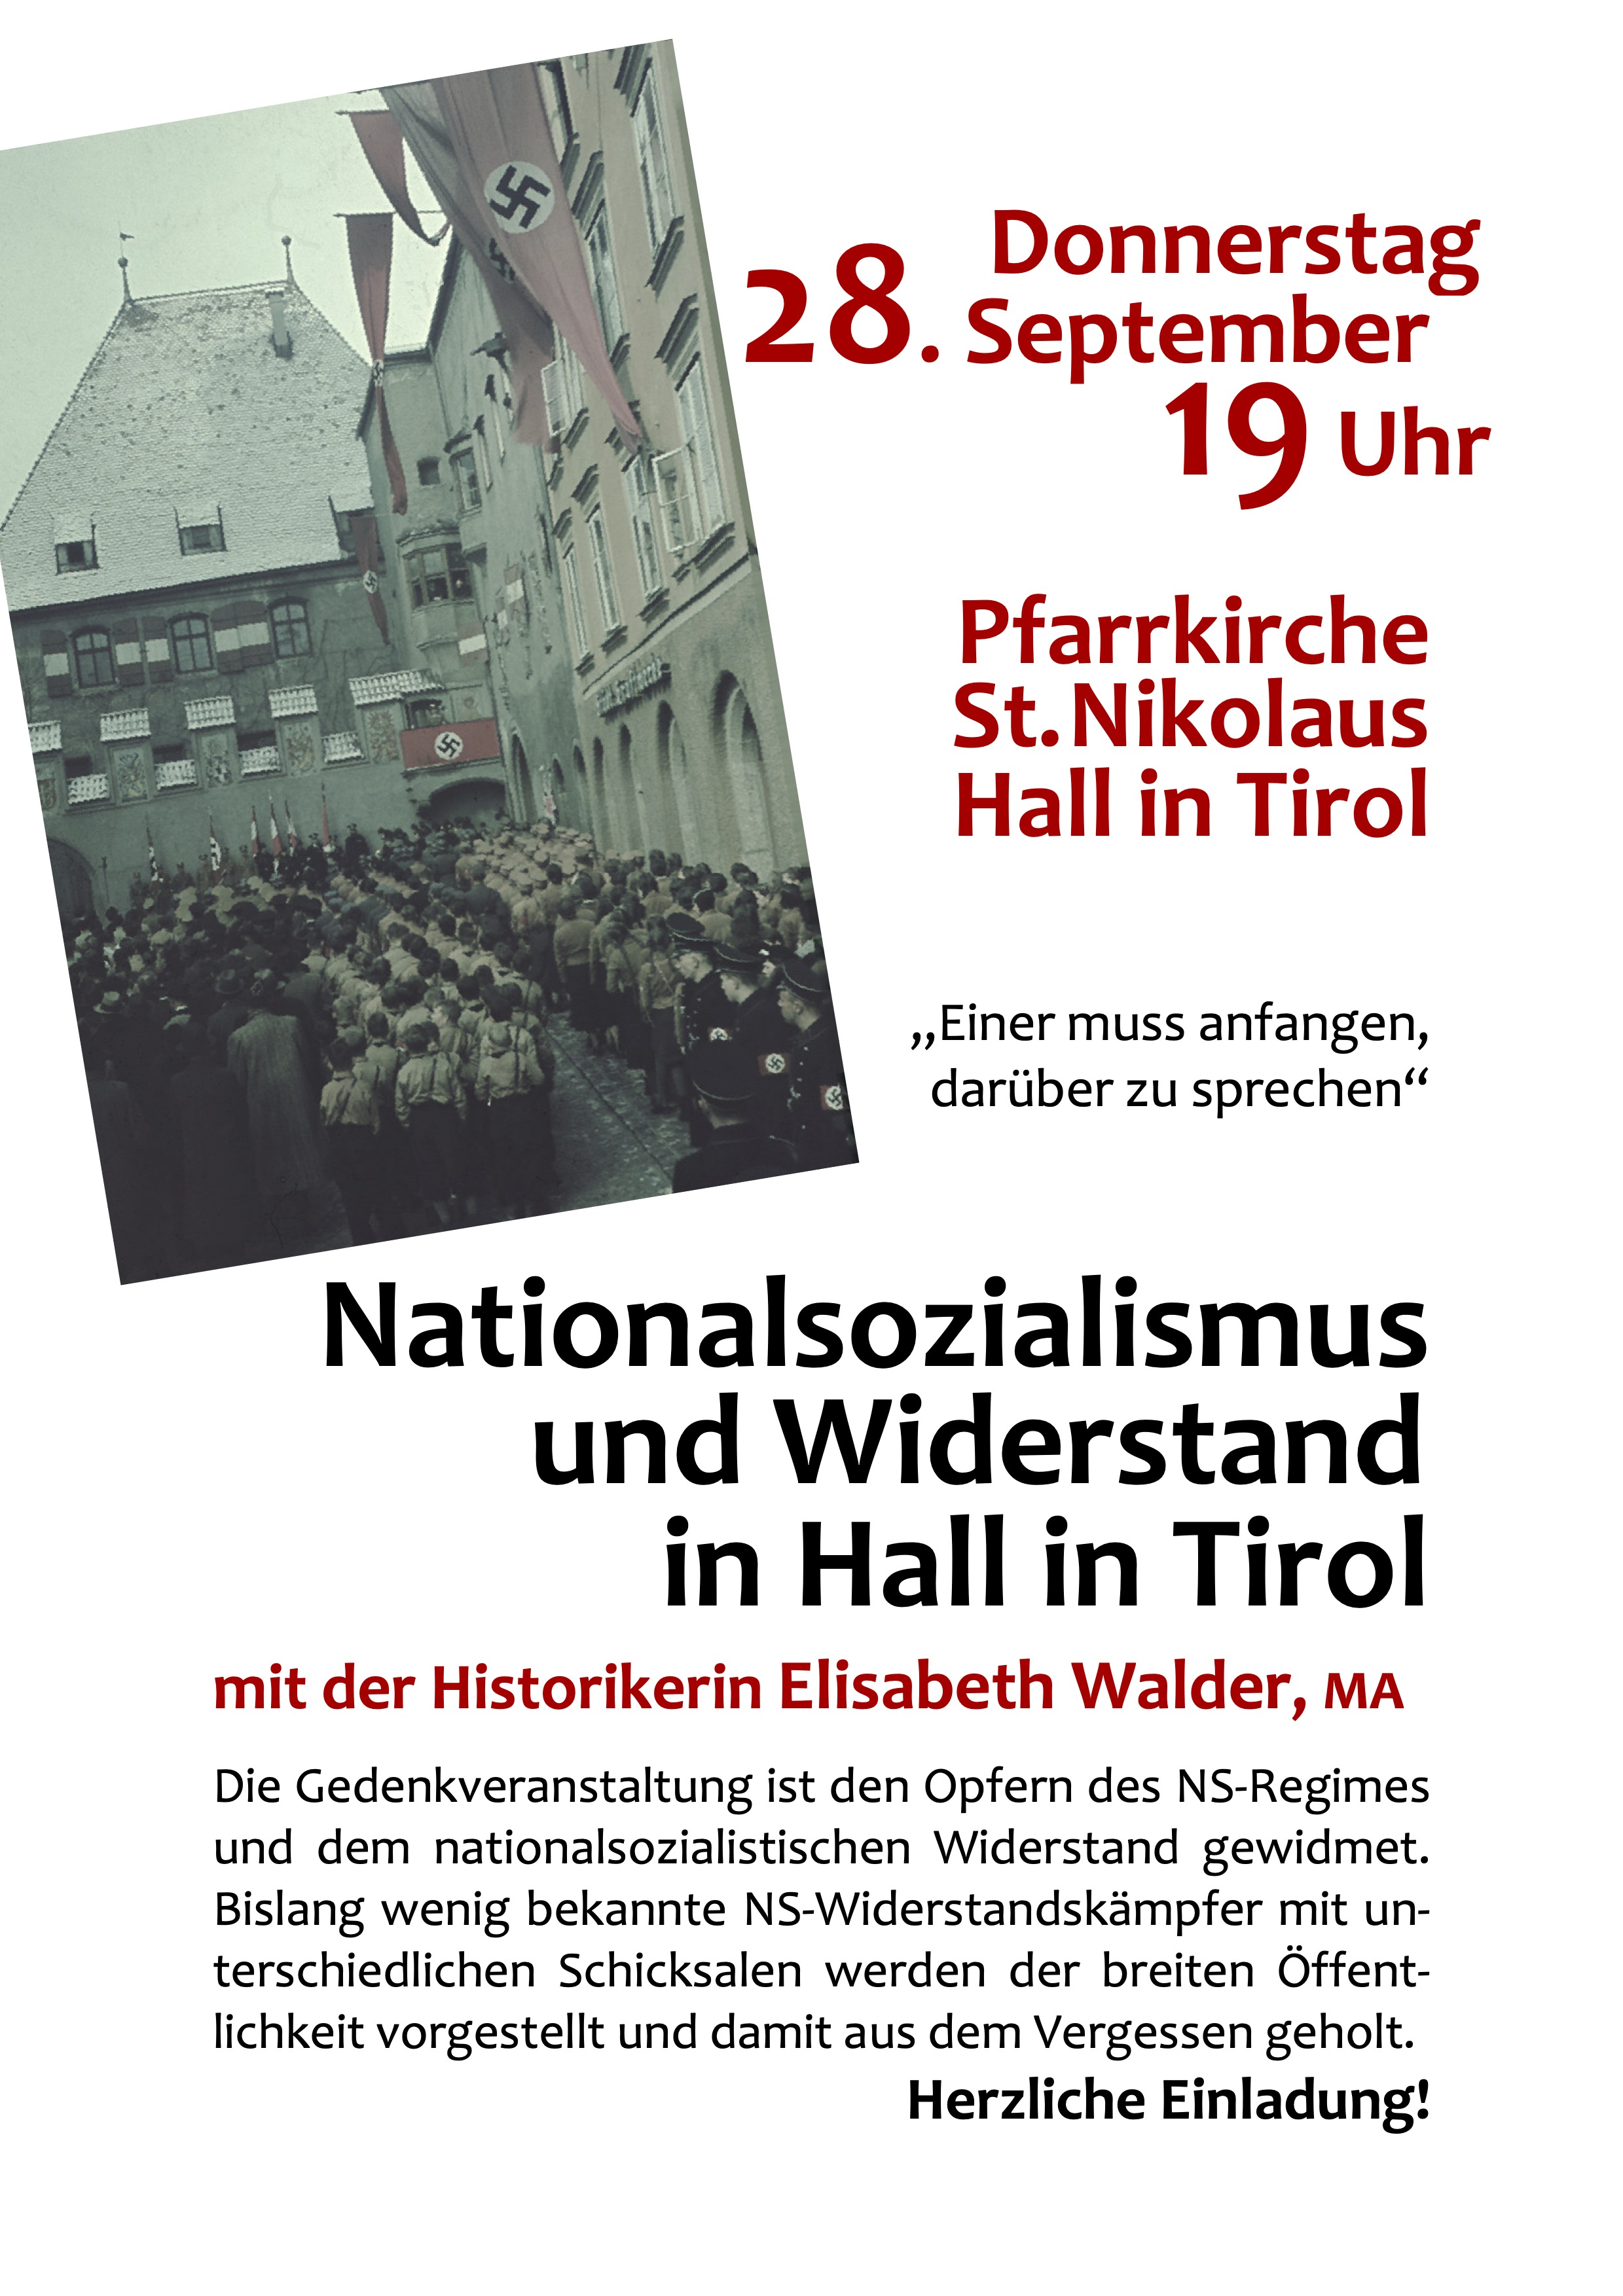 Nationalsozialismus und Widerstand in Hall in Tirol.jpg